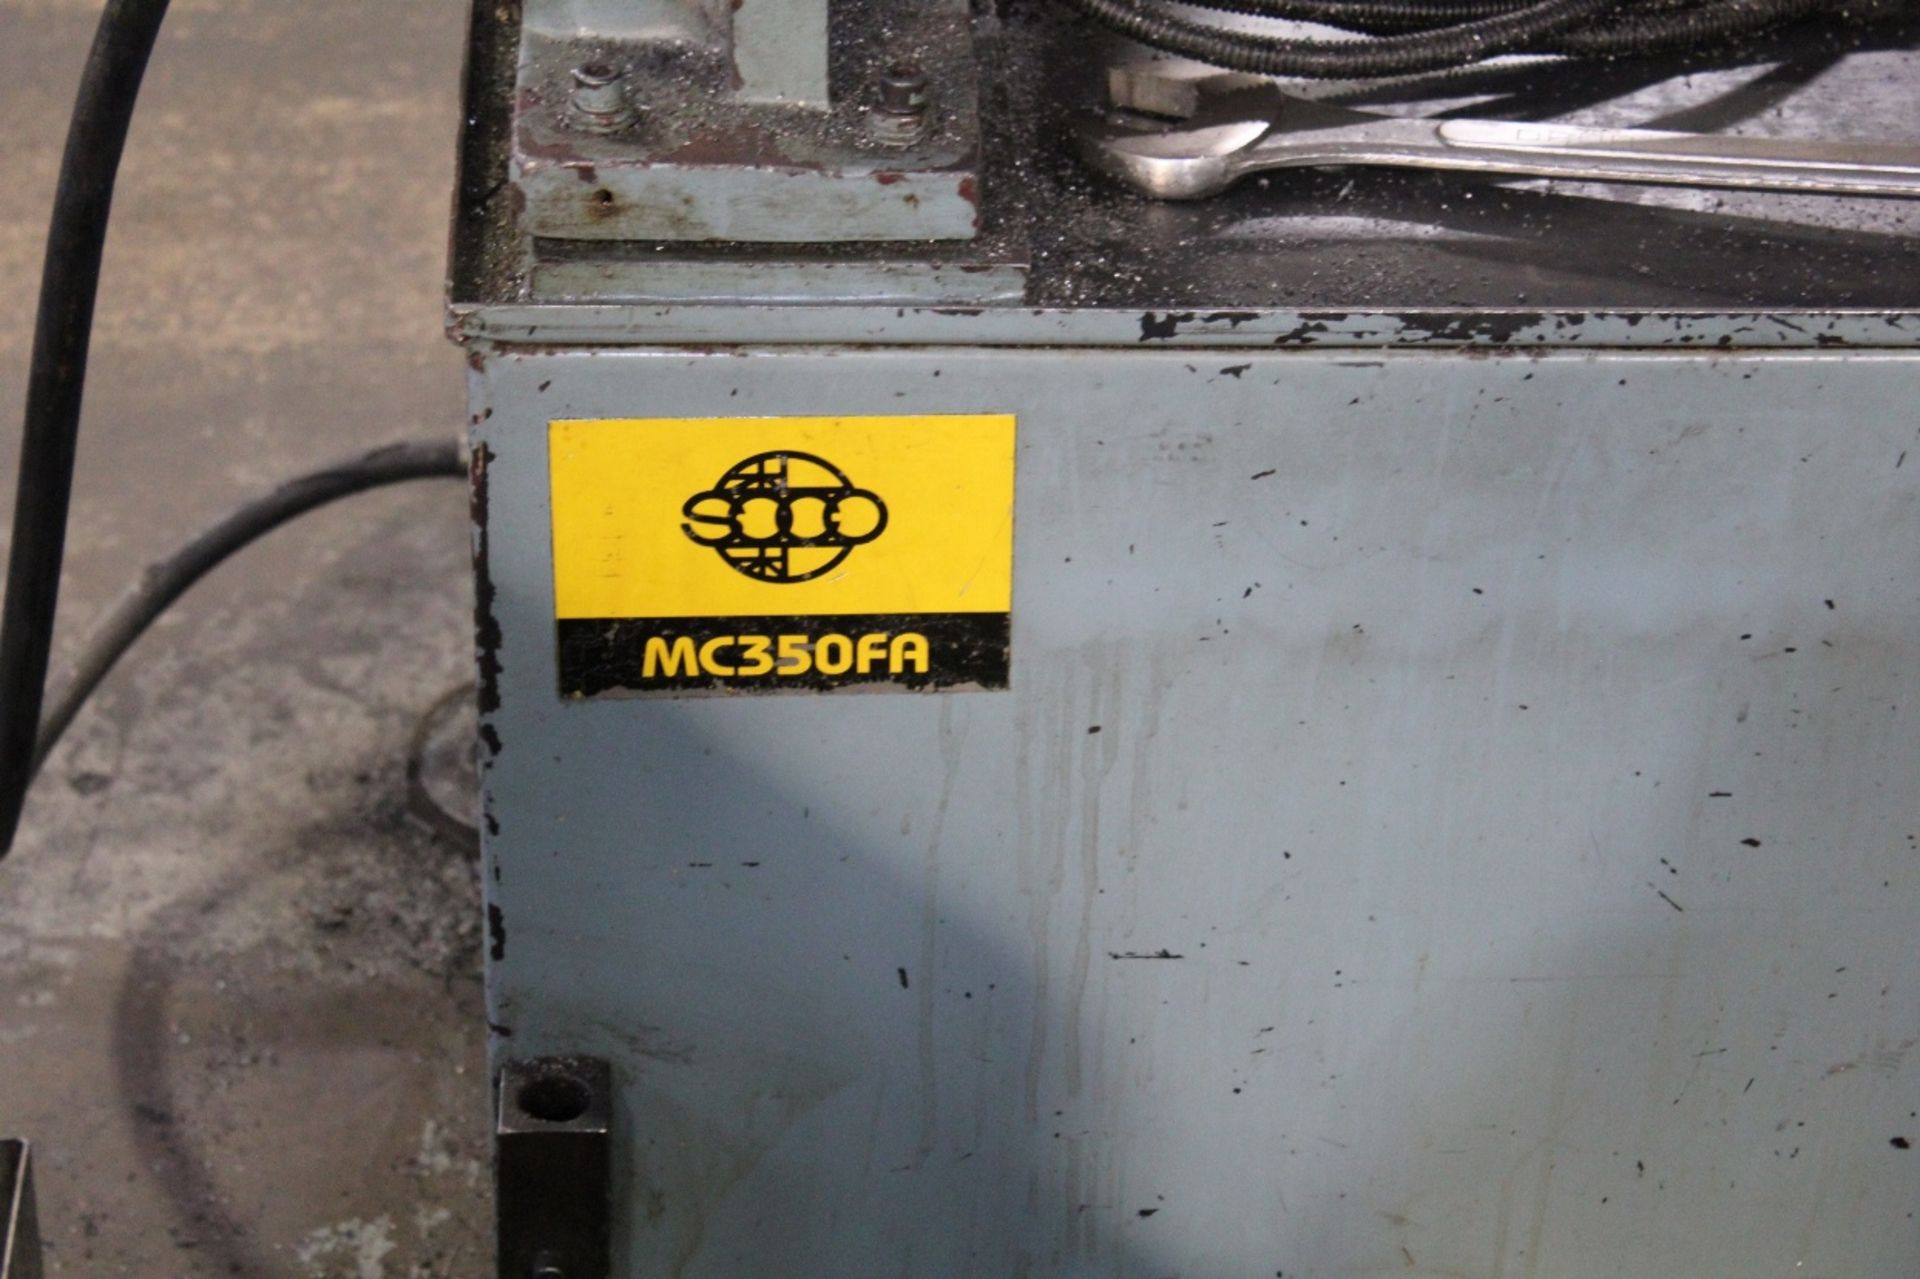 Soco Model MC350FA Automatic Ferris Cold Cut Saw - MISSISSAUGA, ON - Image 4 of 4